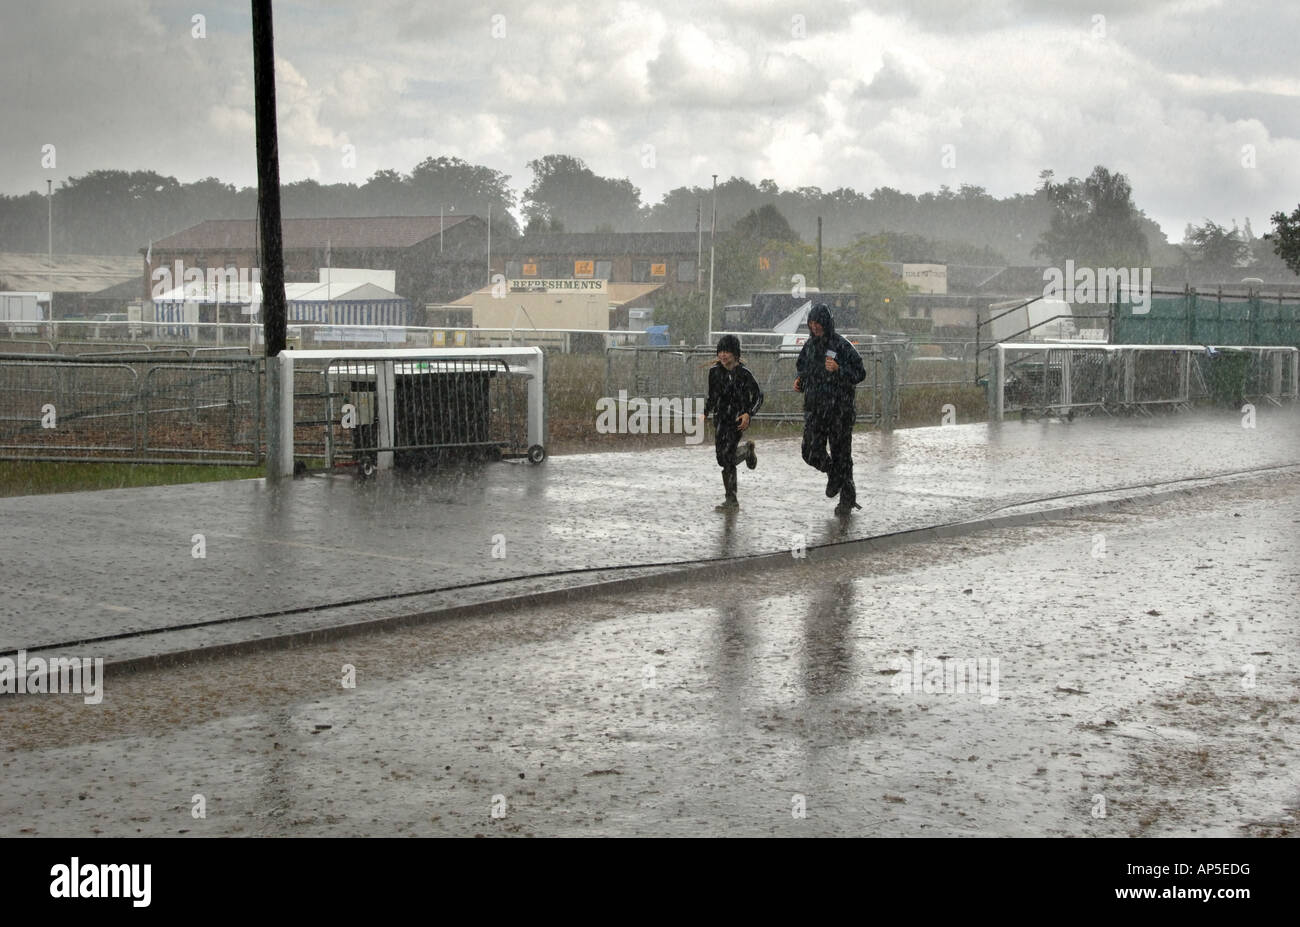 Zwei Personen laufen im Regen Sturm entlang einer Straße in England Stockfoto